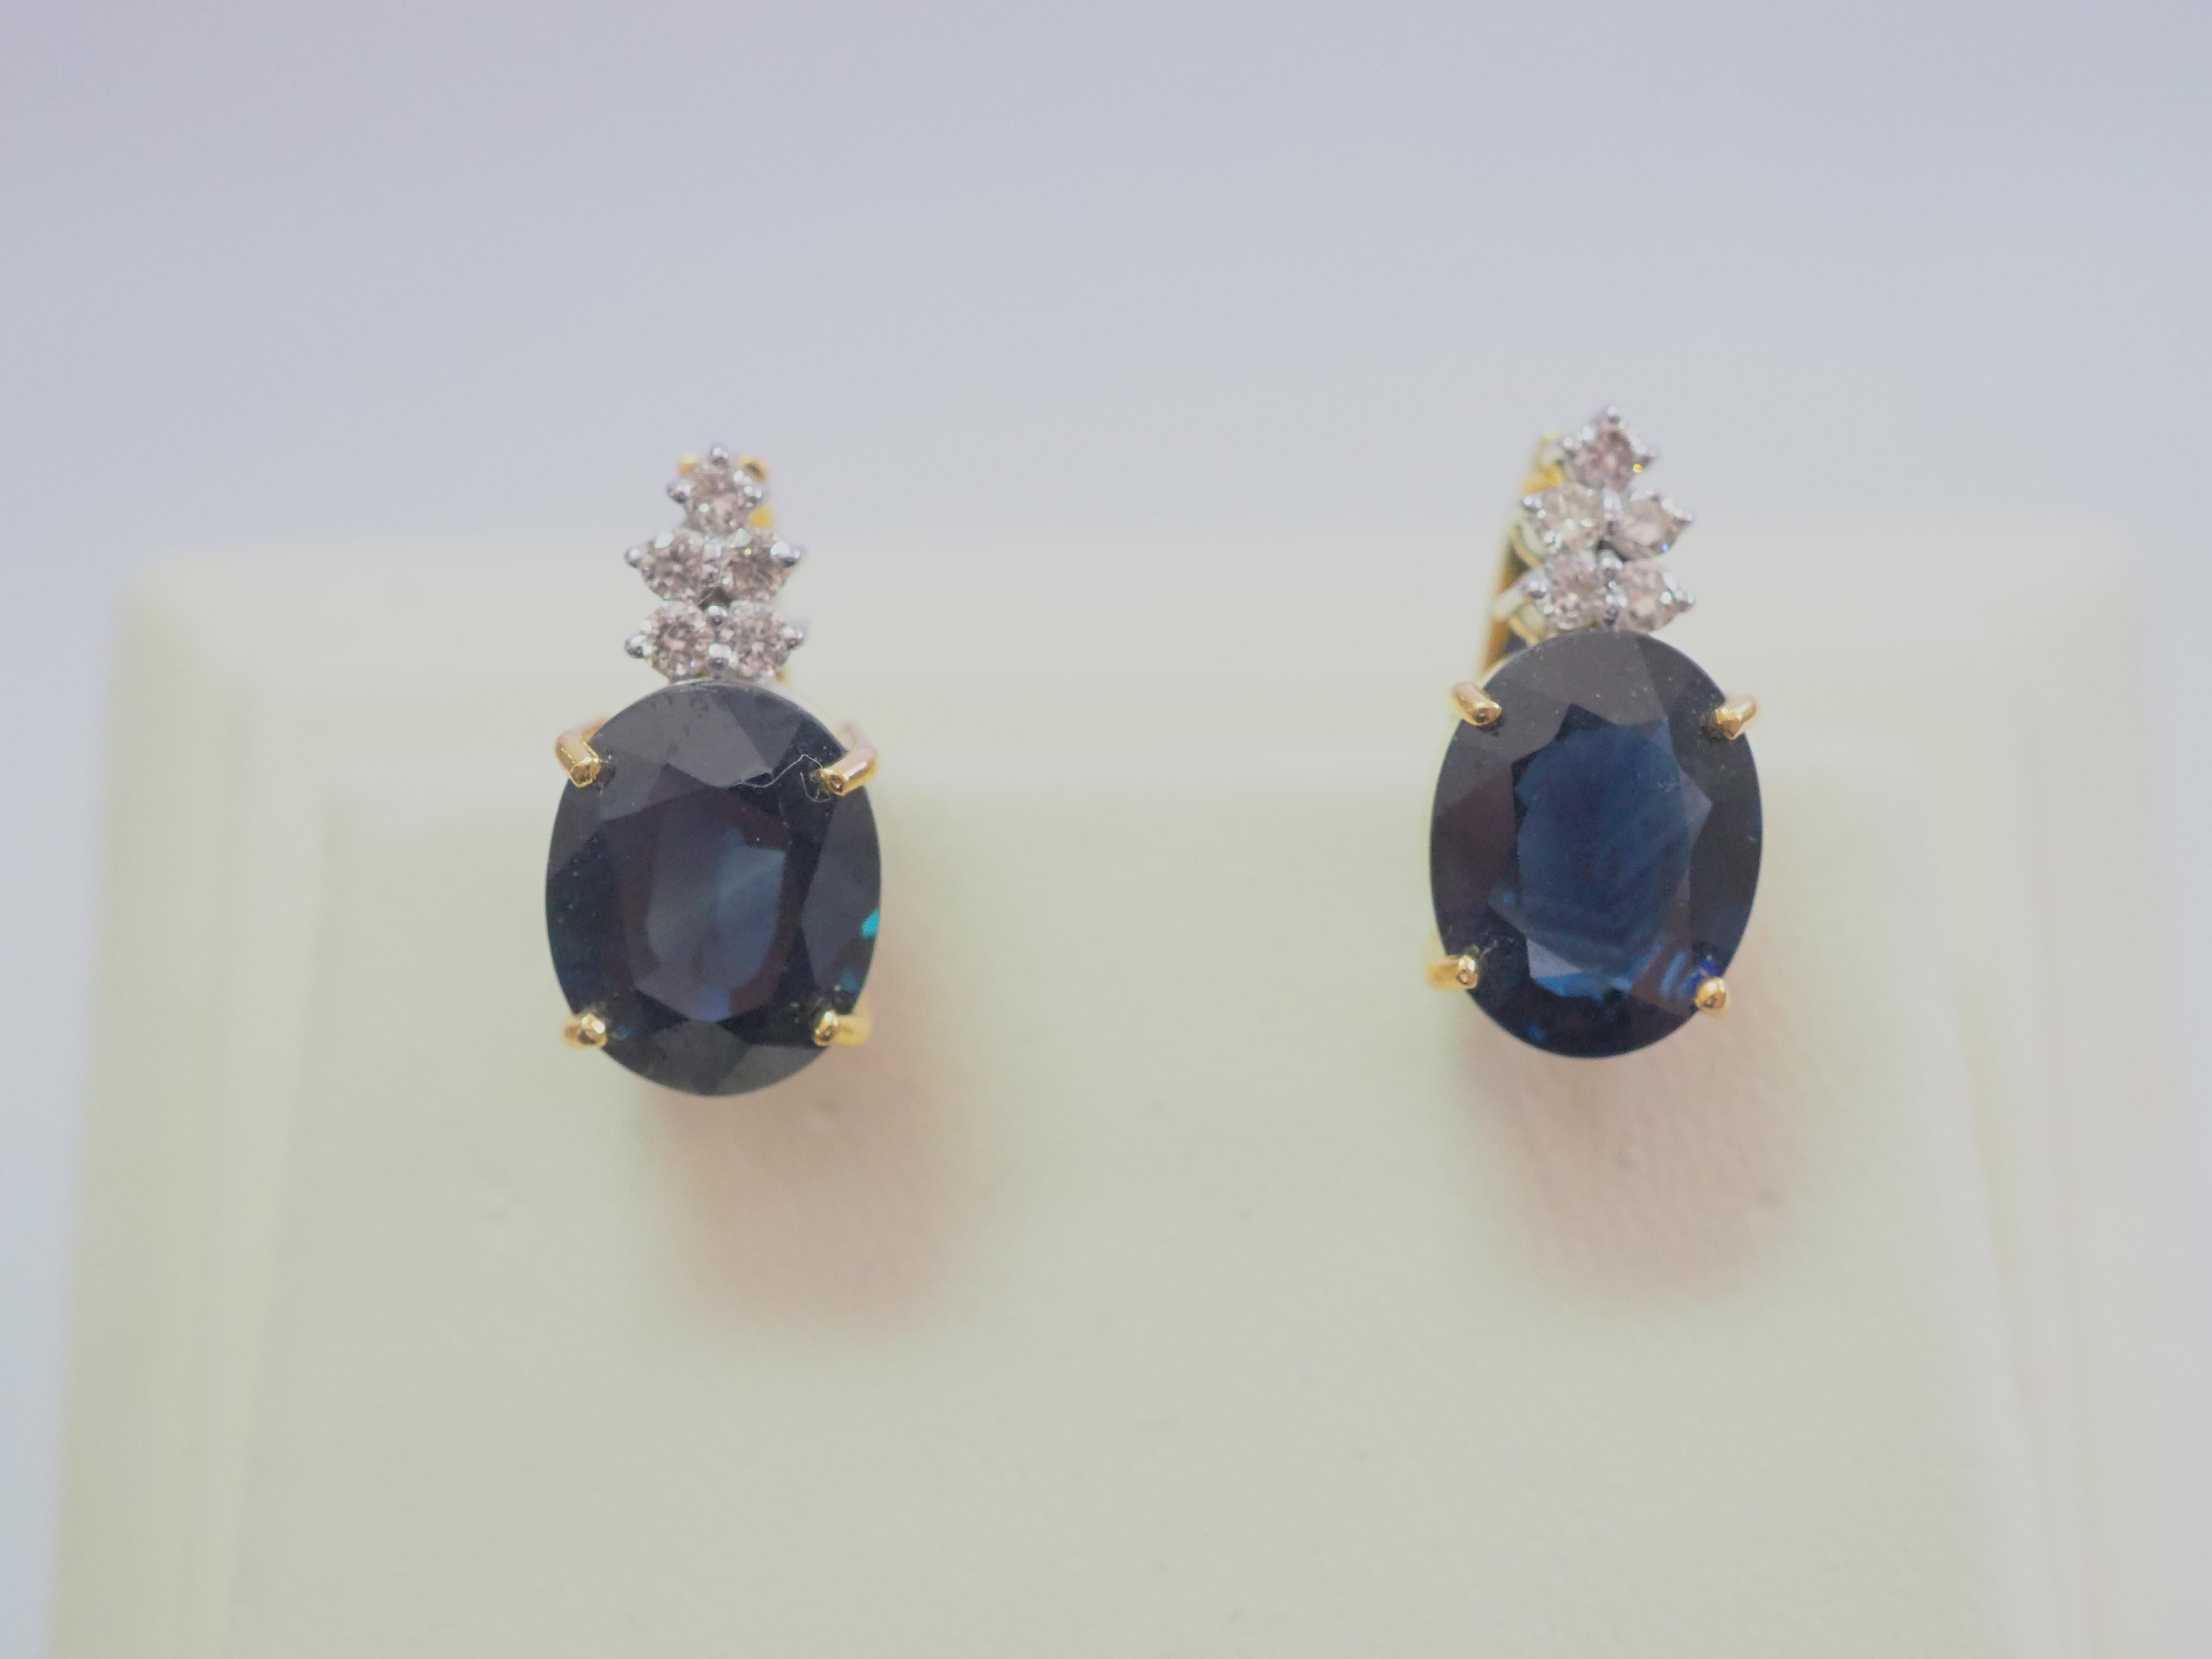 Hier wird ein feiner und wunderschöner tiefblauer Saphir und Diamant-Cocktail-Ohrring mit Schnappverschluss präsentiert. Der ovale tiefblaue Saphir hat die Farbe, die unverwechselbar ist und dunklen Ton mit mäßiger Sättigung von Blau, die in dieser